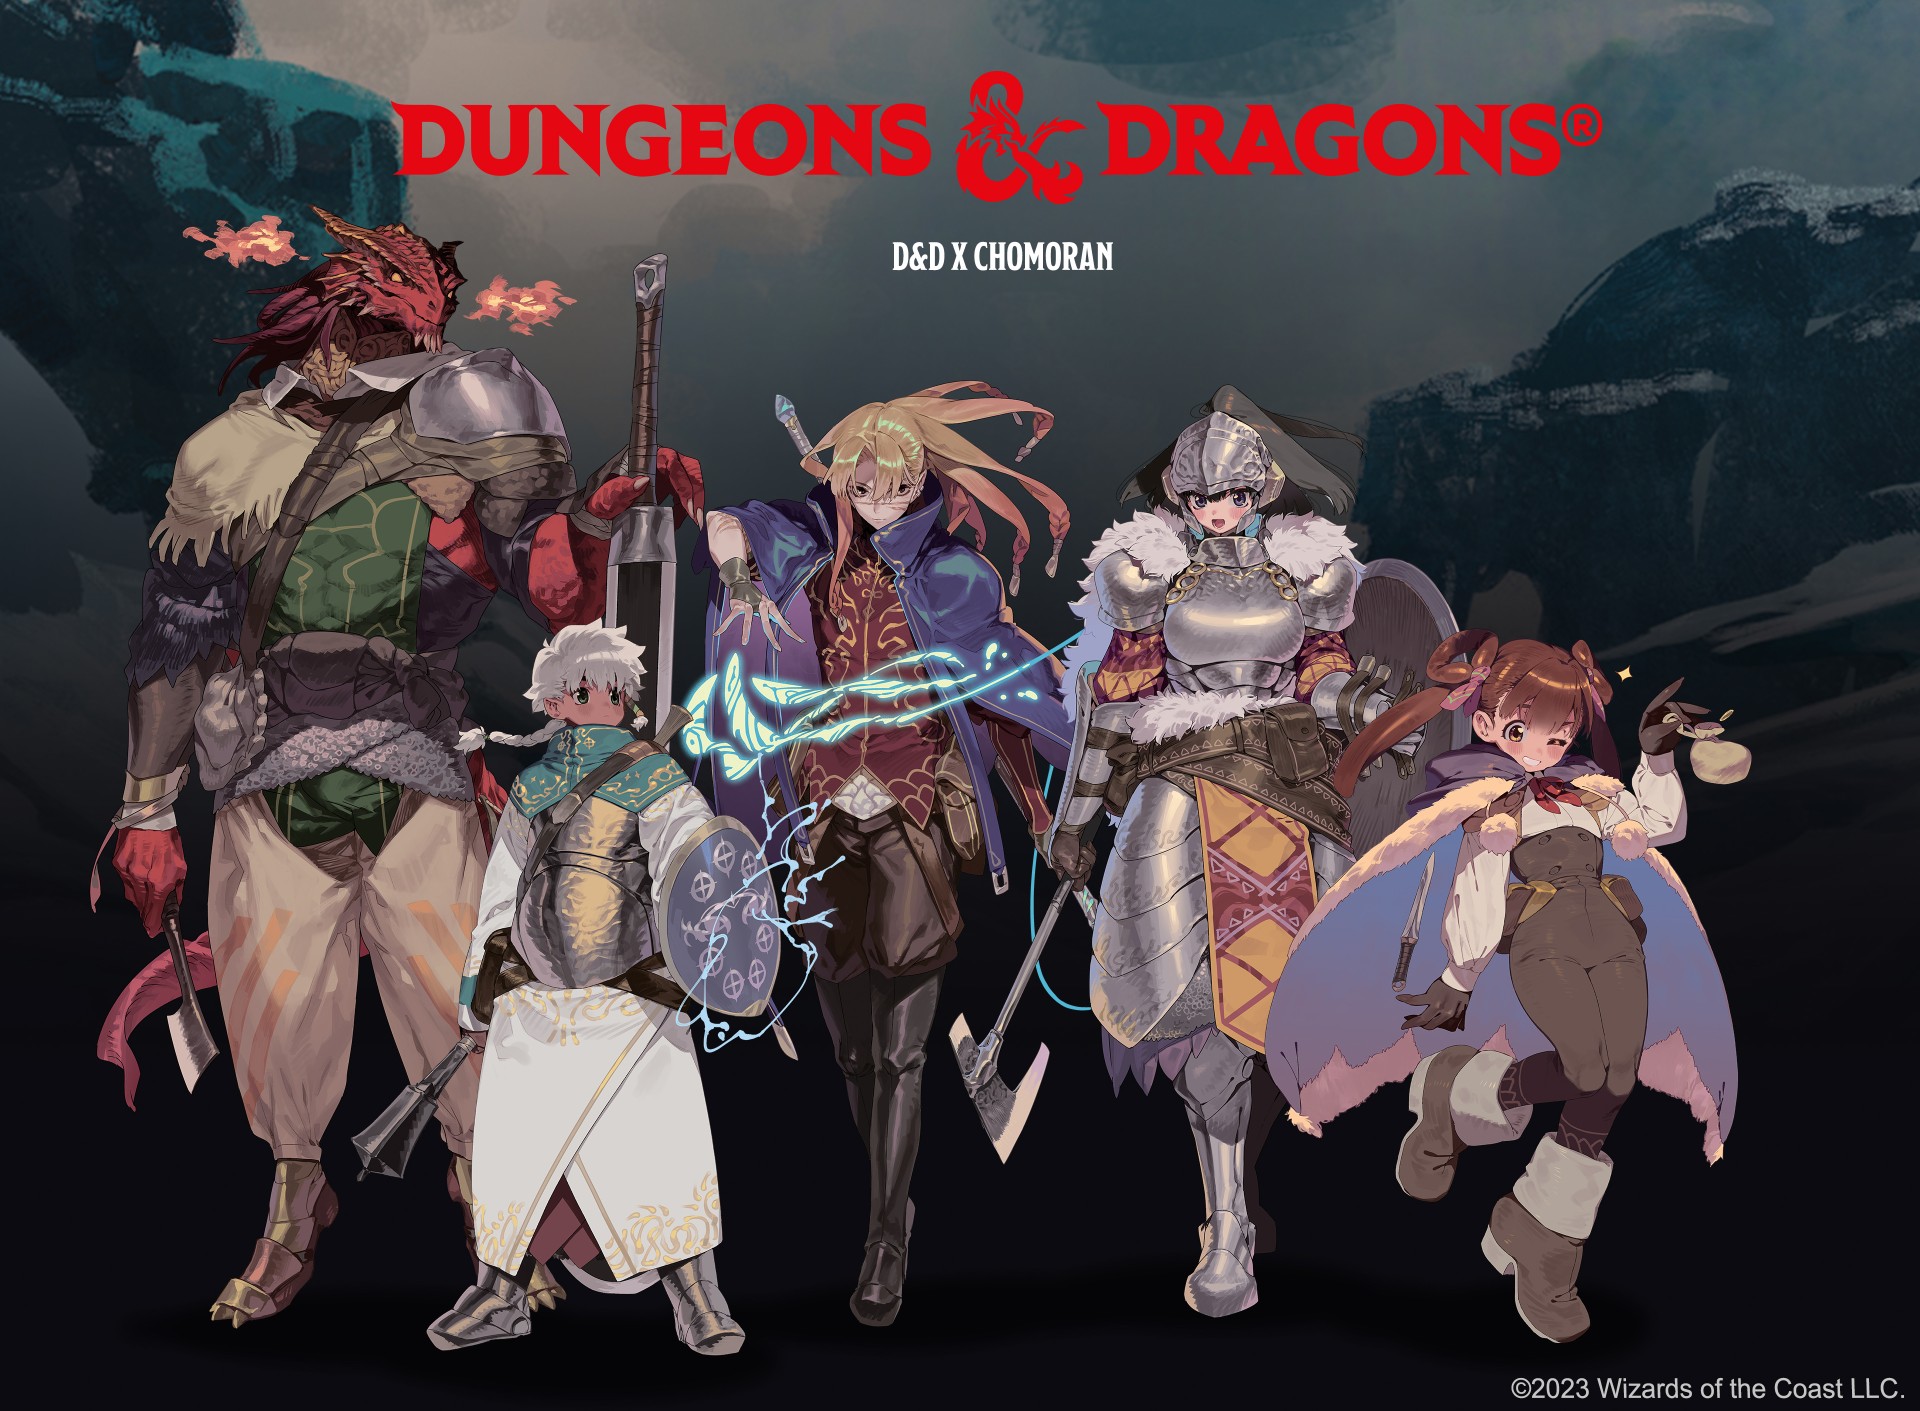 Dungeons & Dragons ประเทศญี่ปุ่นเปิดตัวชุดเริ่มต้นเล่นและตัวละครสไตล์อนิเมะที่หาไม่ได้จากที่อื่น